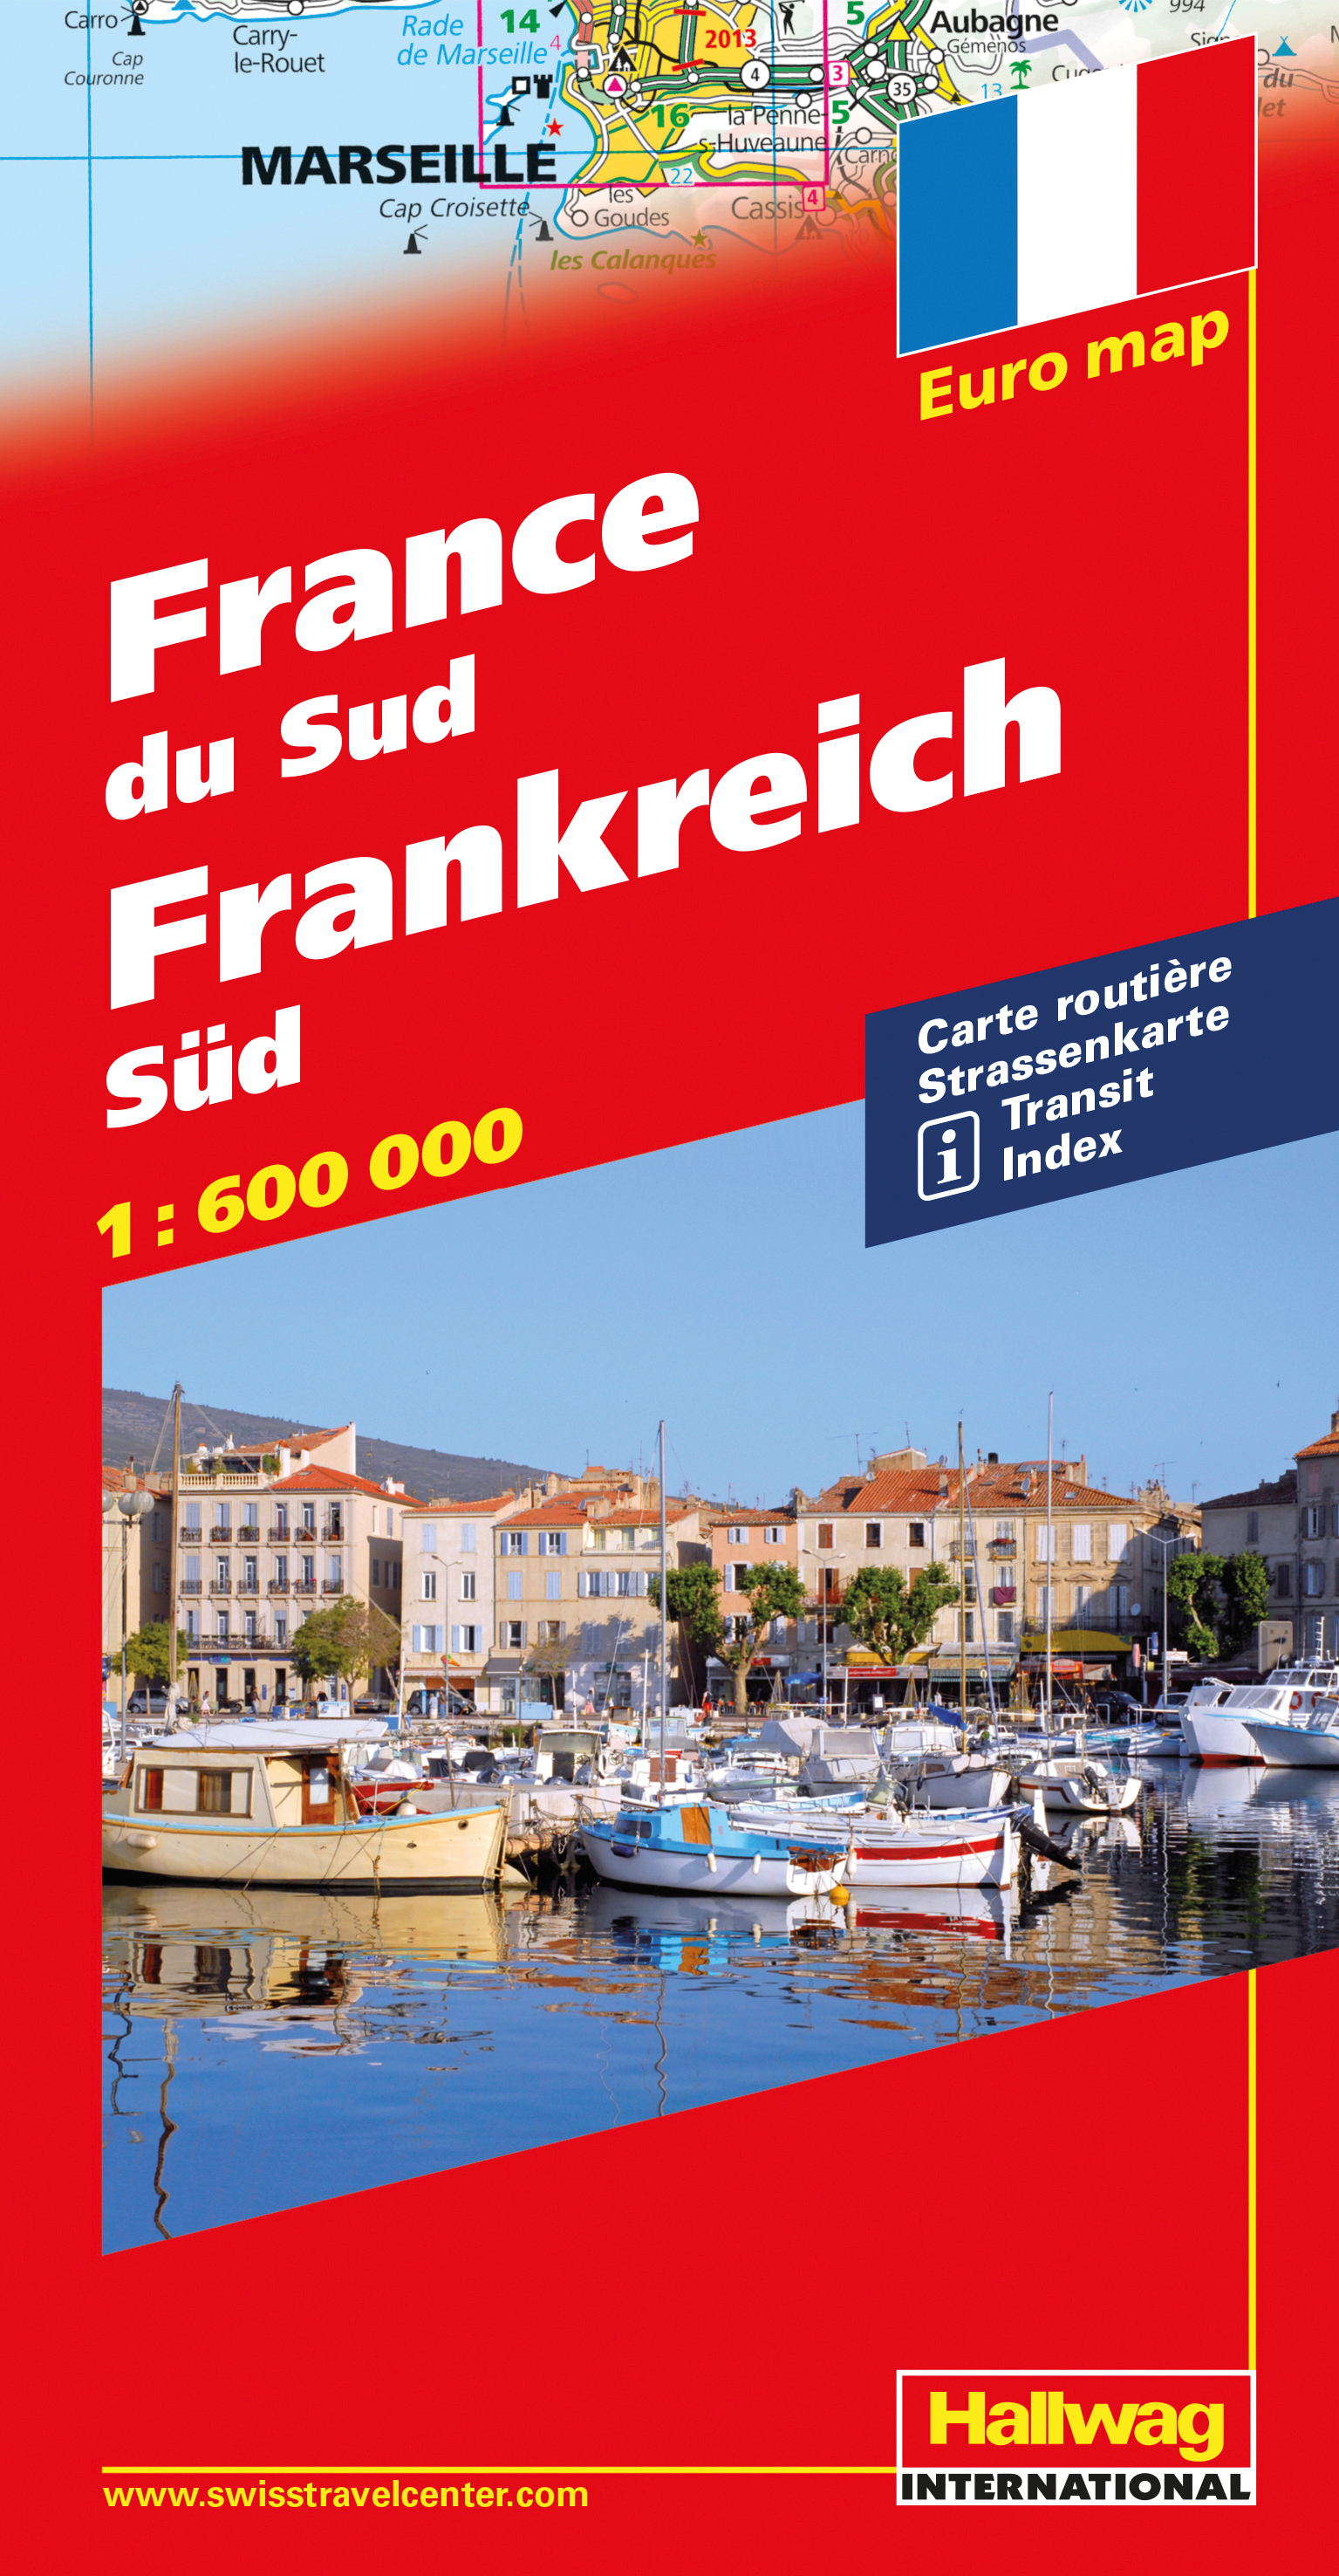 HALLWAG Strassenkarte 382830922 Frankreich Süd 1:600'000